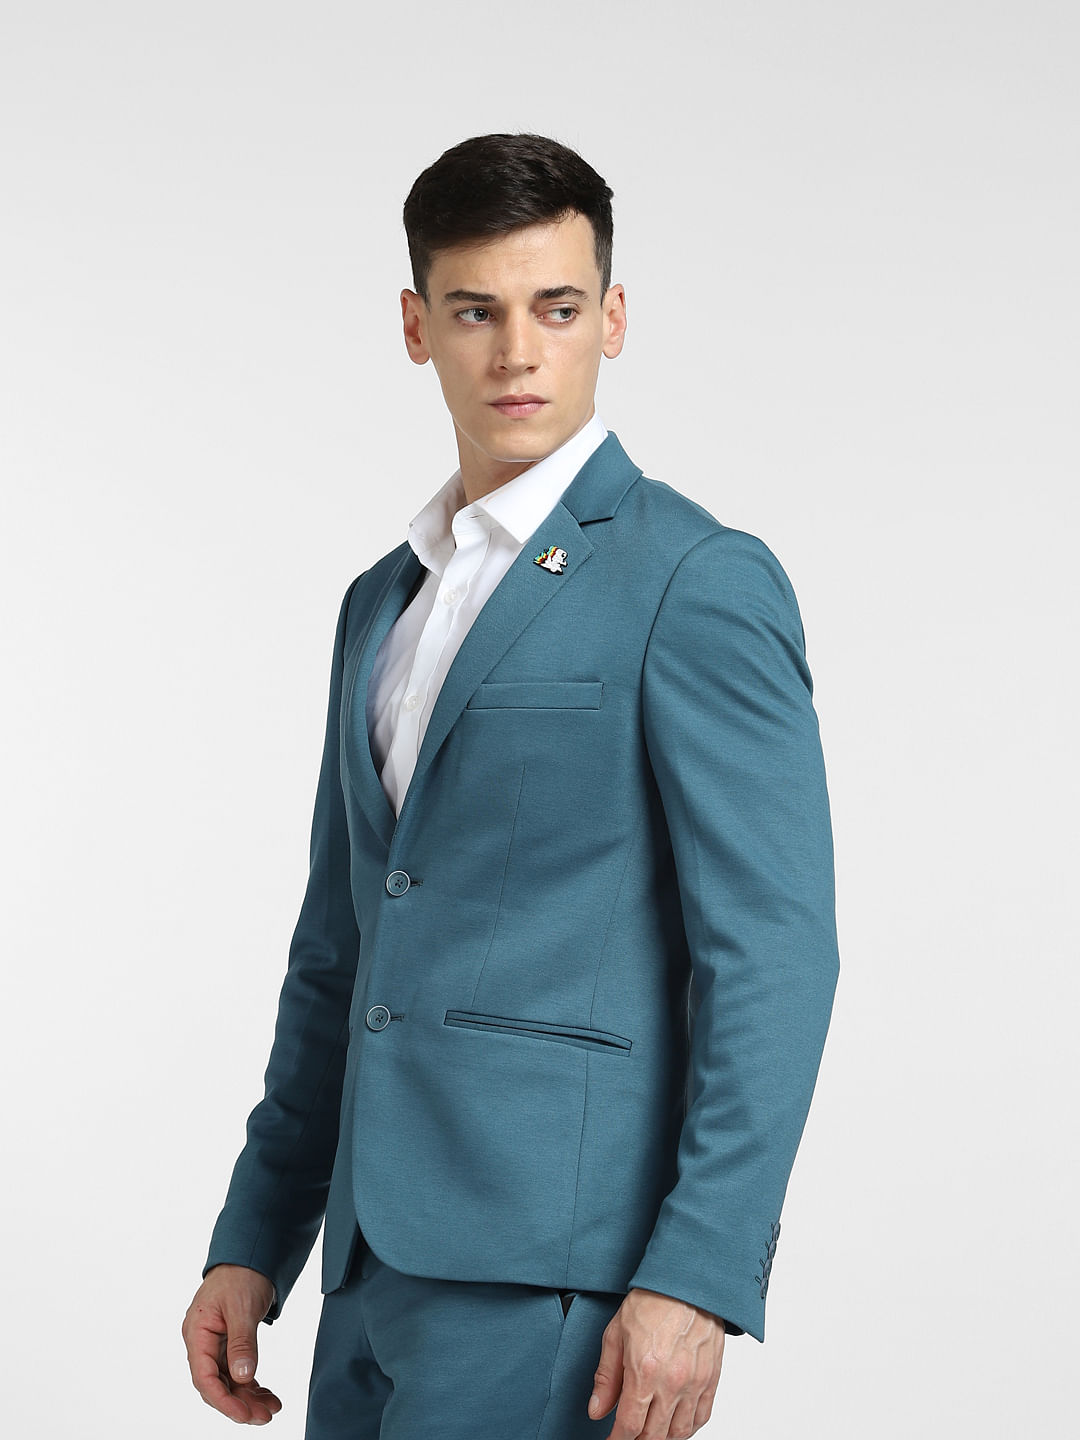 How to Wear Men's Separates Combinations | Blue suit men, Blue blazer men,  Grey pants men